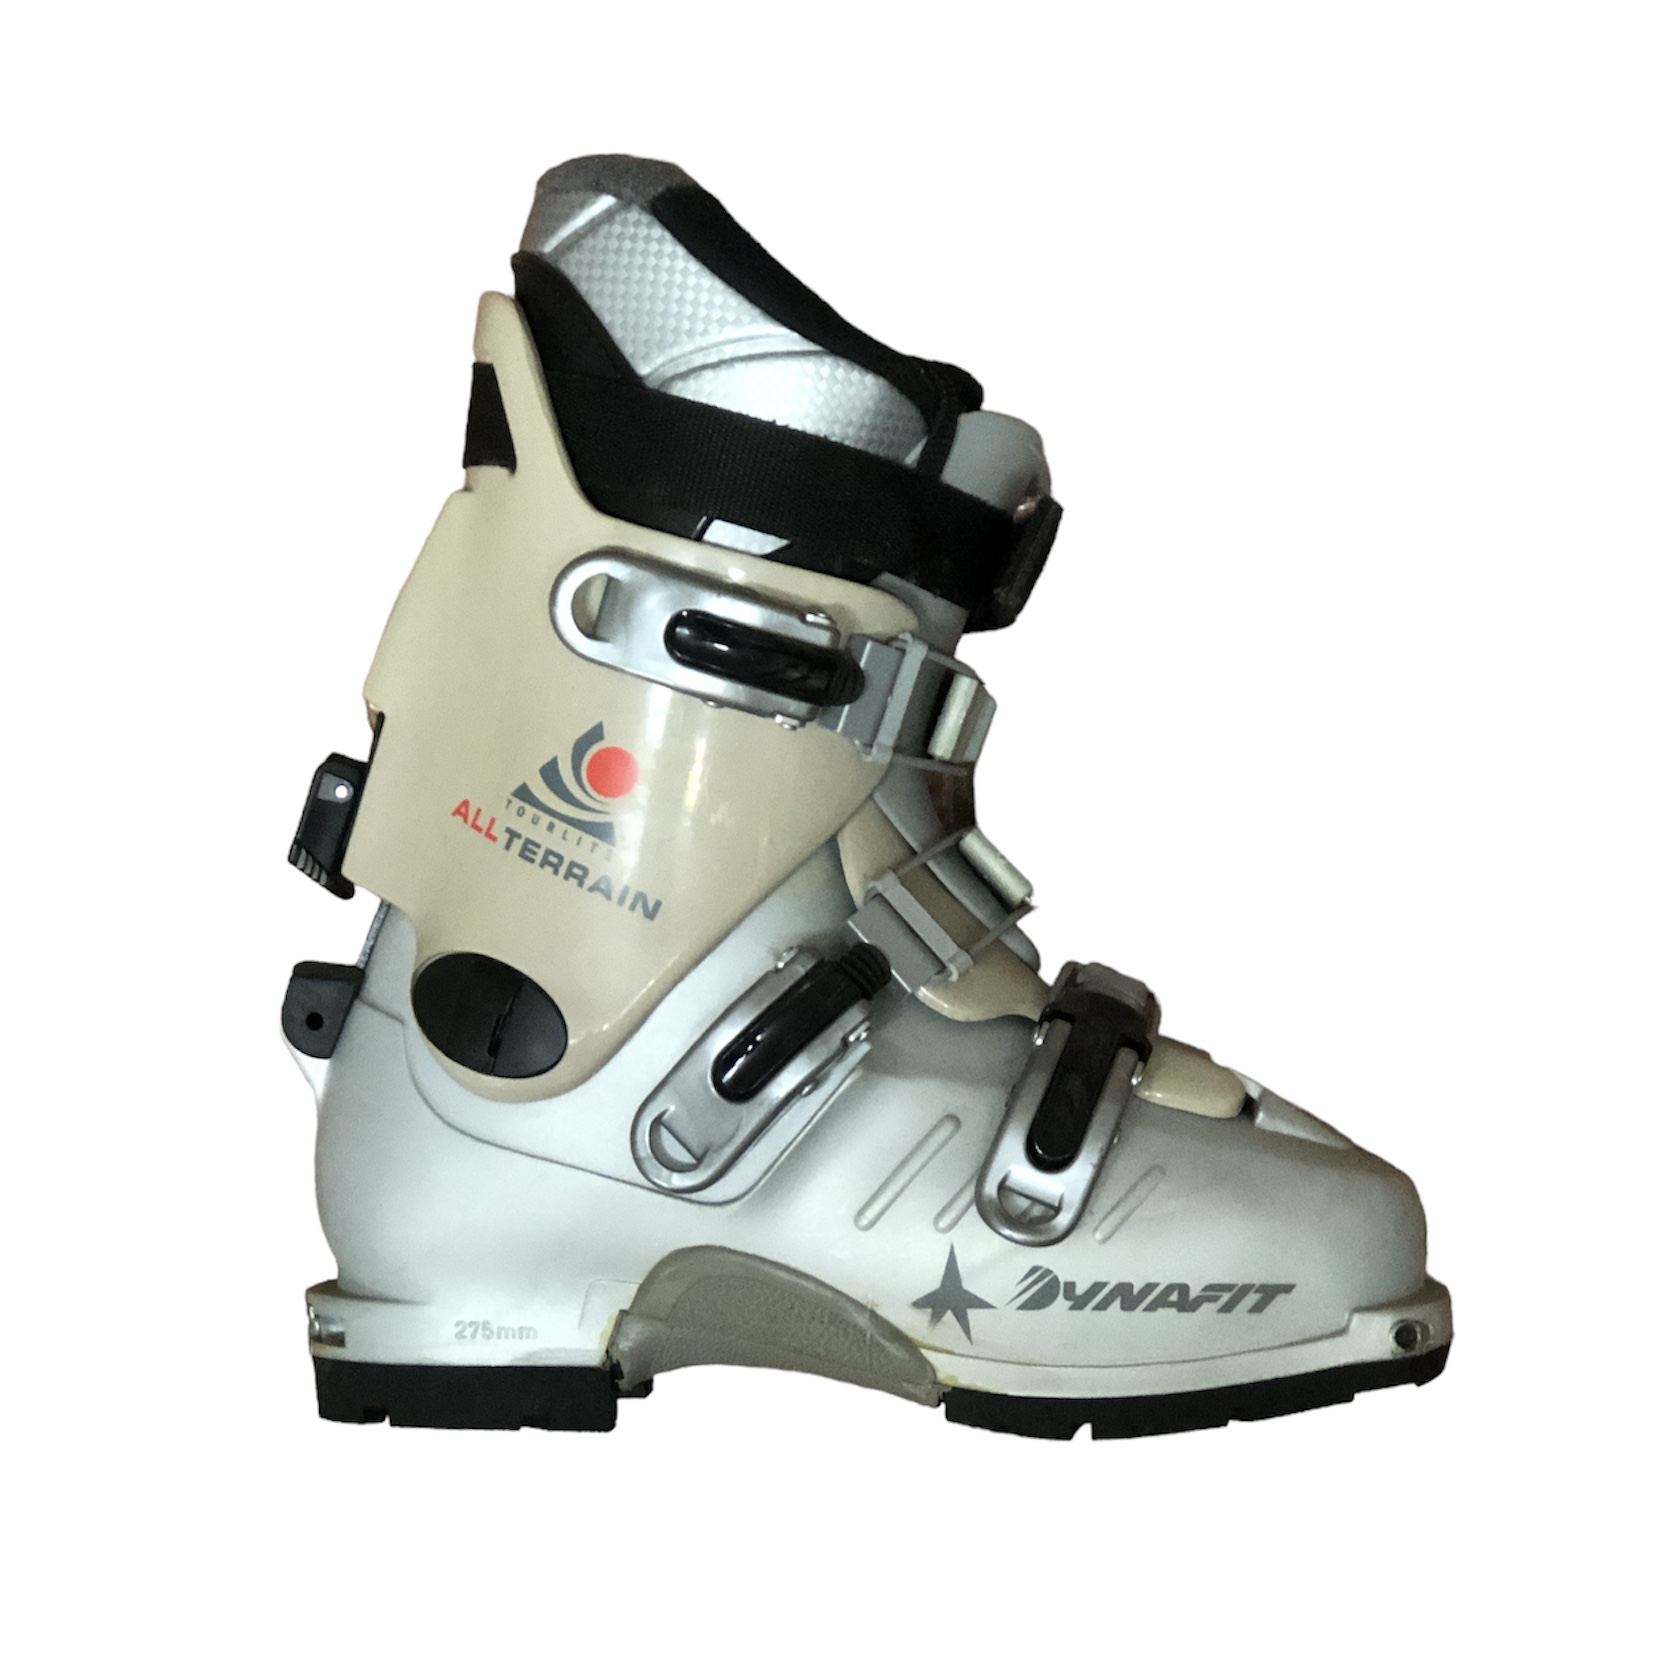 DYNAFIT - używane buty skitour R. 23,5 cm 275mm rozmiar 37 :: Sklep  Sportowy - outlet sportowy, koncówki kolekcji, wyprzedaże, narty, deski,  wiązania, sprzet narciarski, buty sportowe